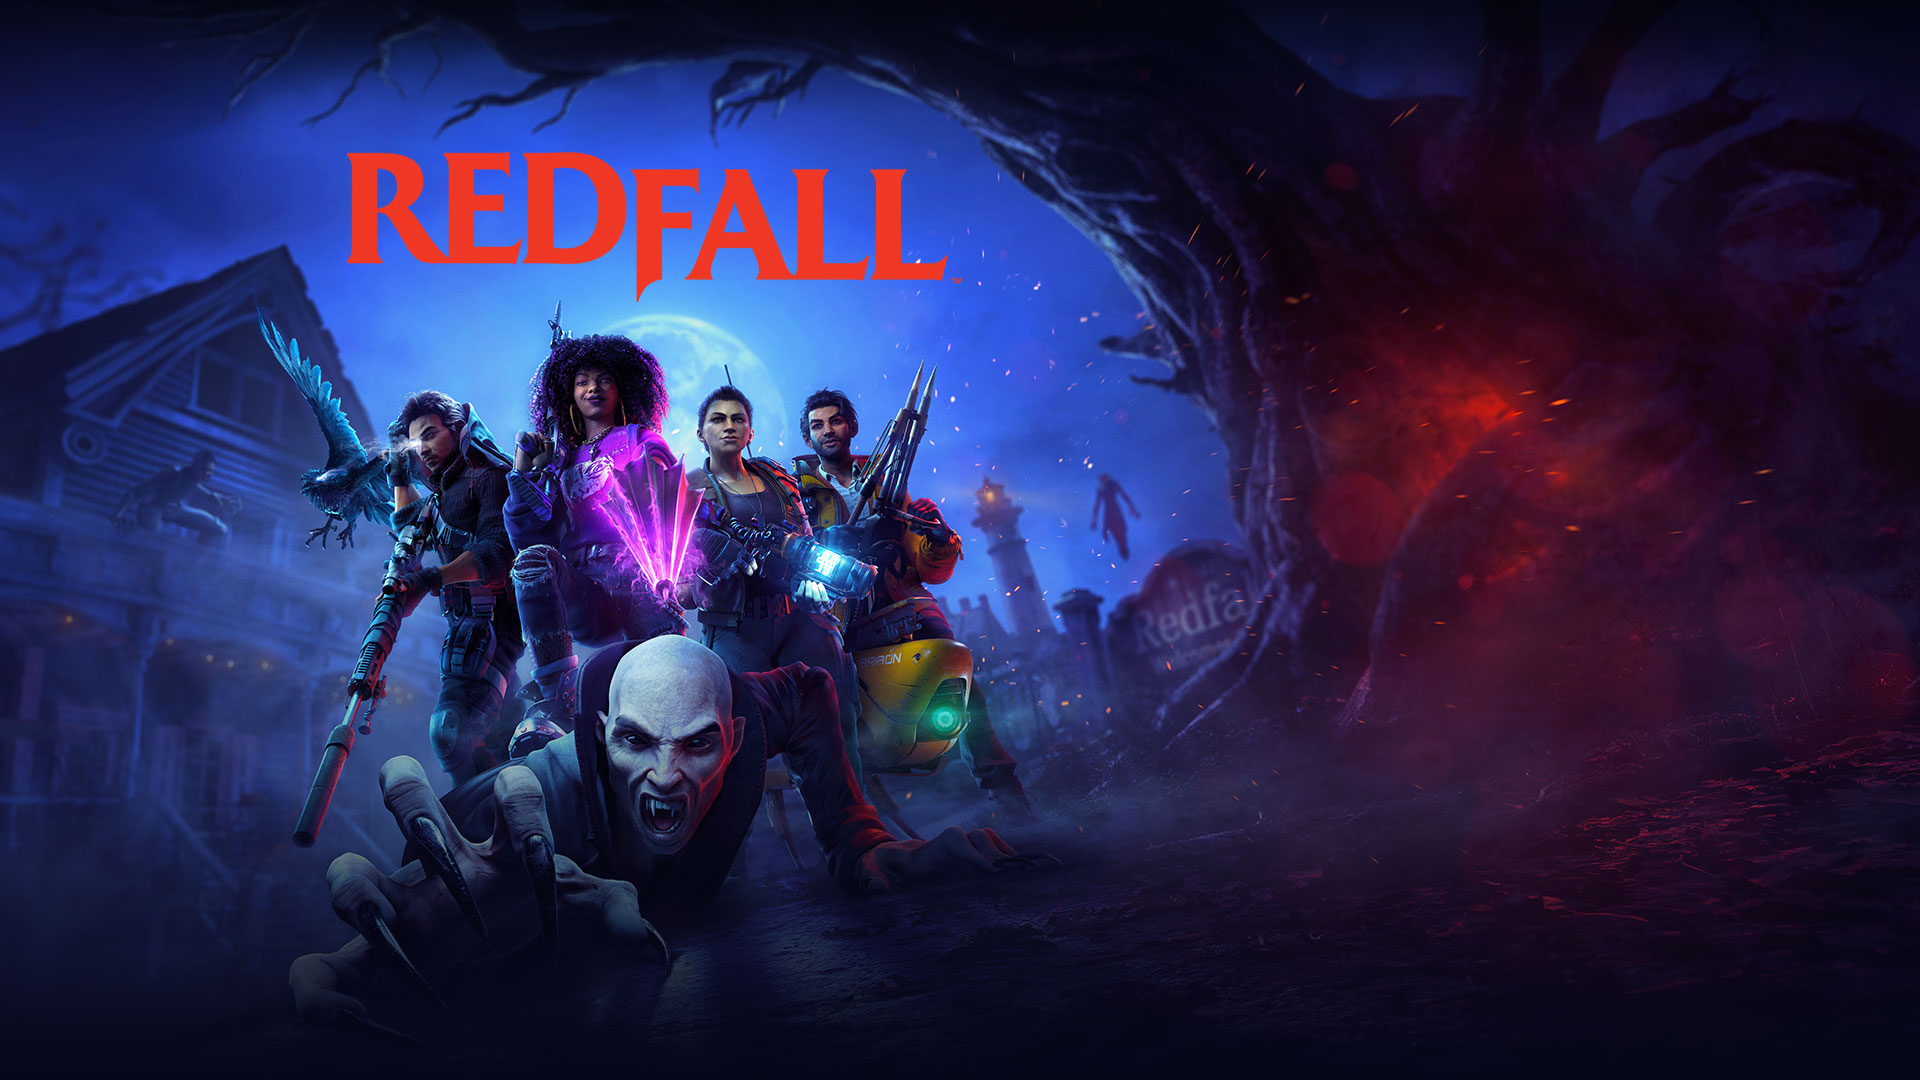 Une nouvelle bande-annonce pour Redfall, un jeu de tir coopératif contre les vampires des créateurs de Dishonored